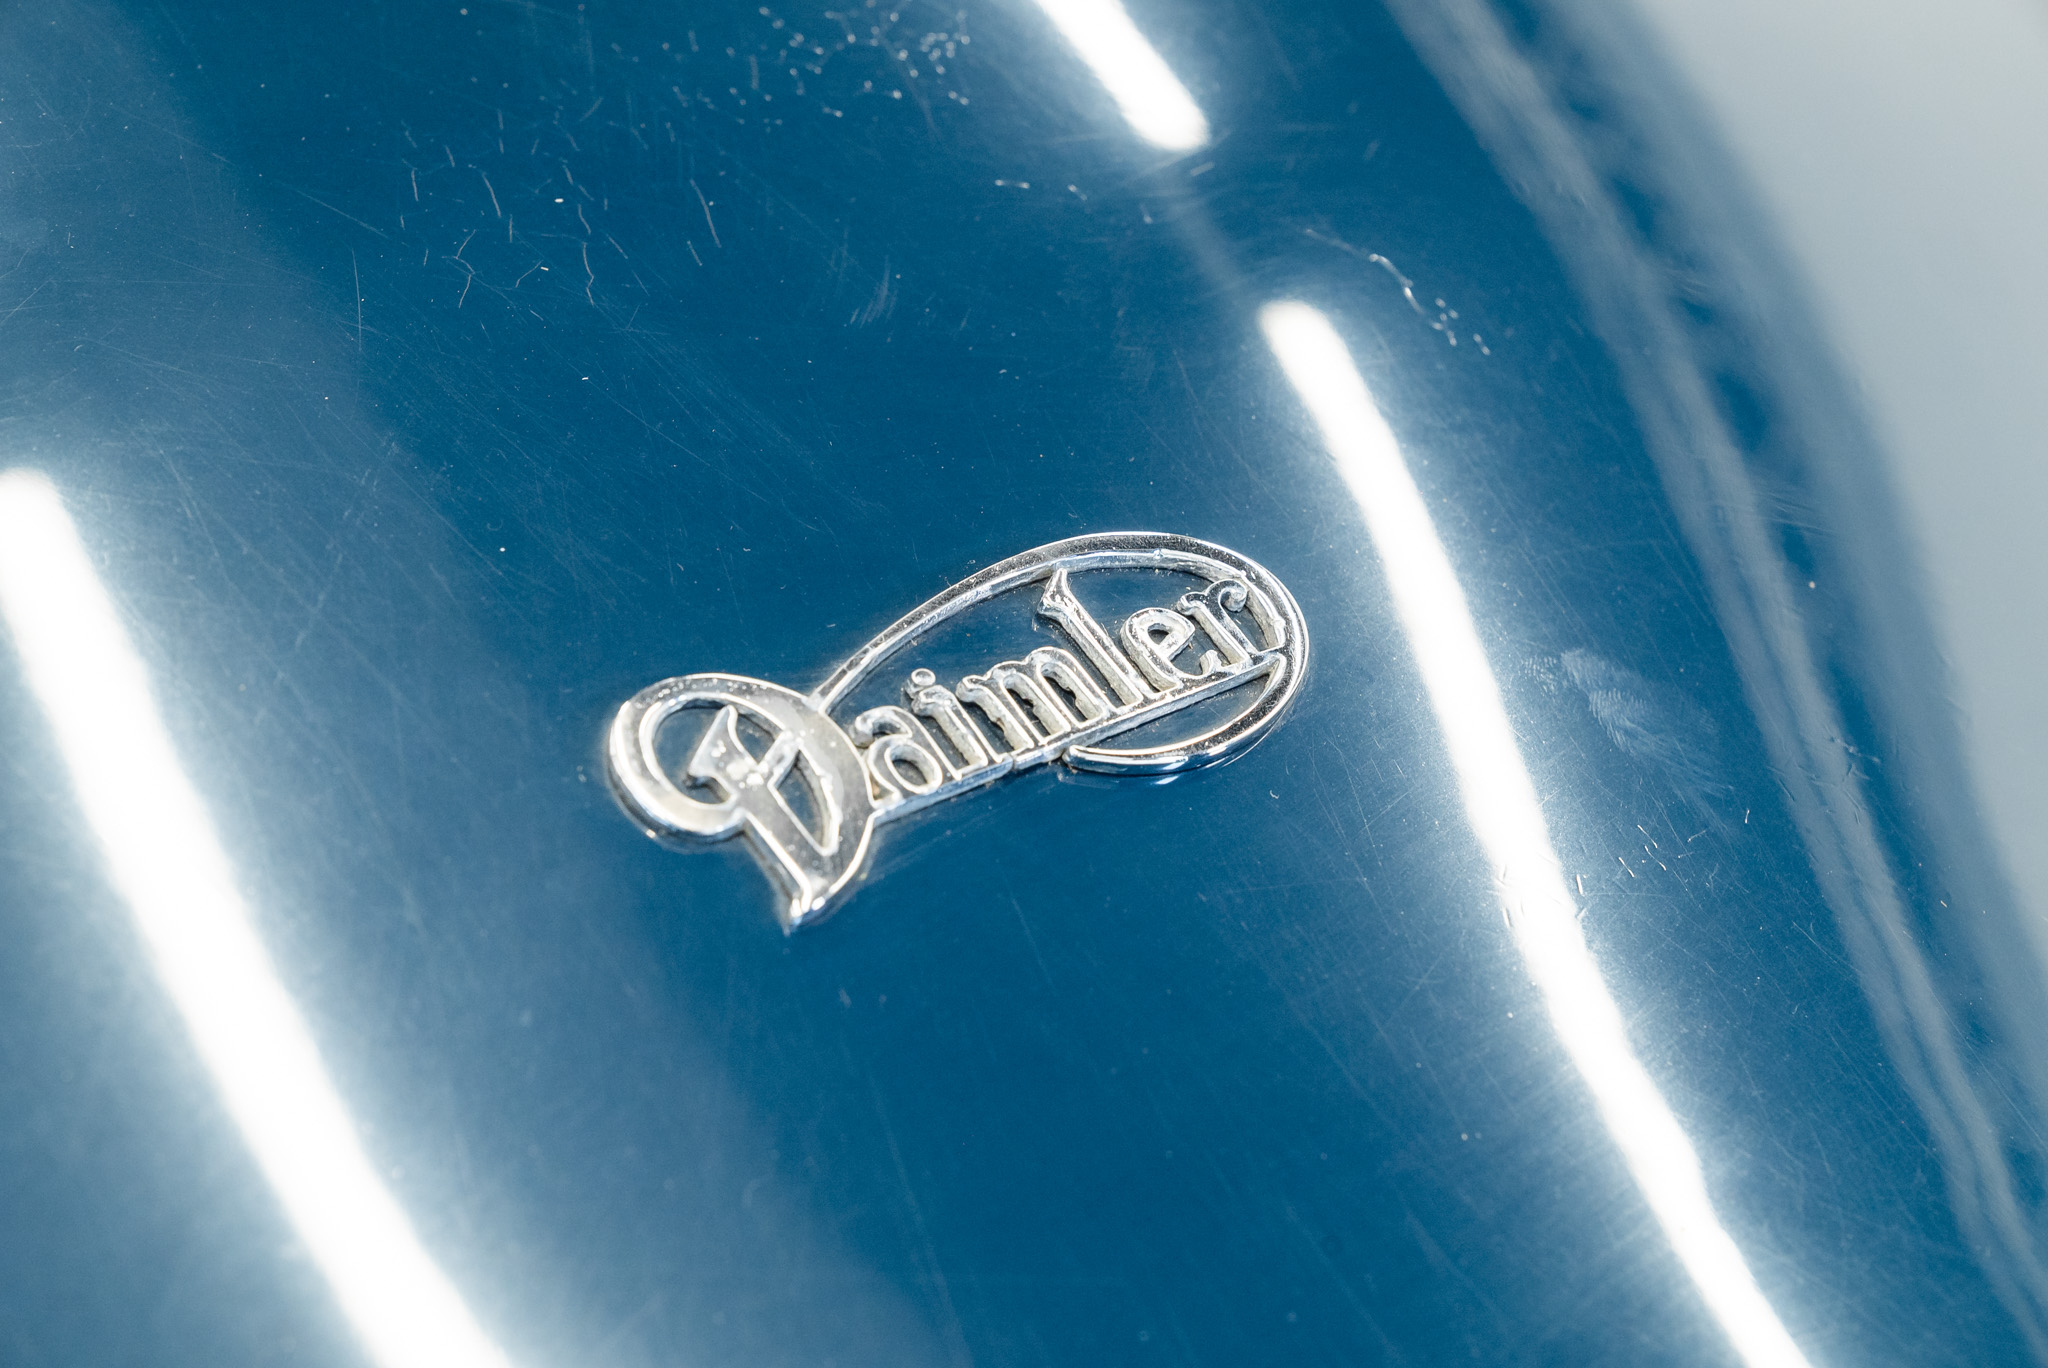 Daimler 250 V8 Automatic 